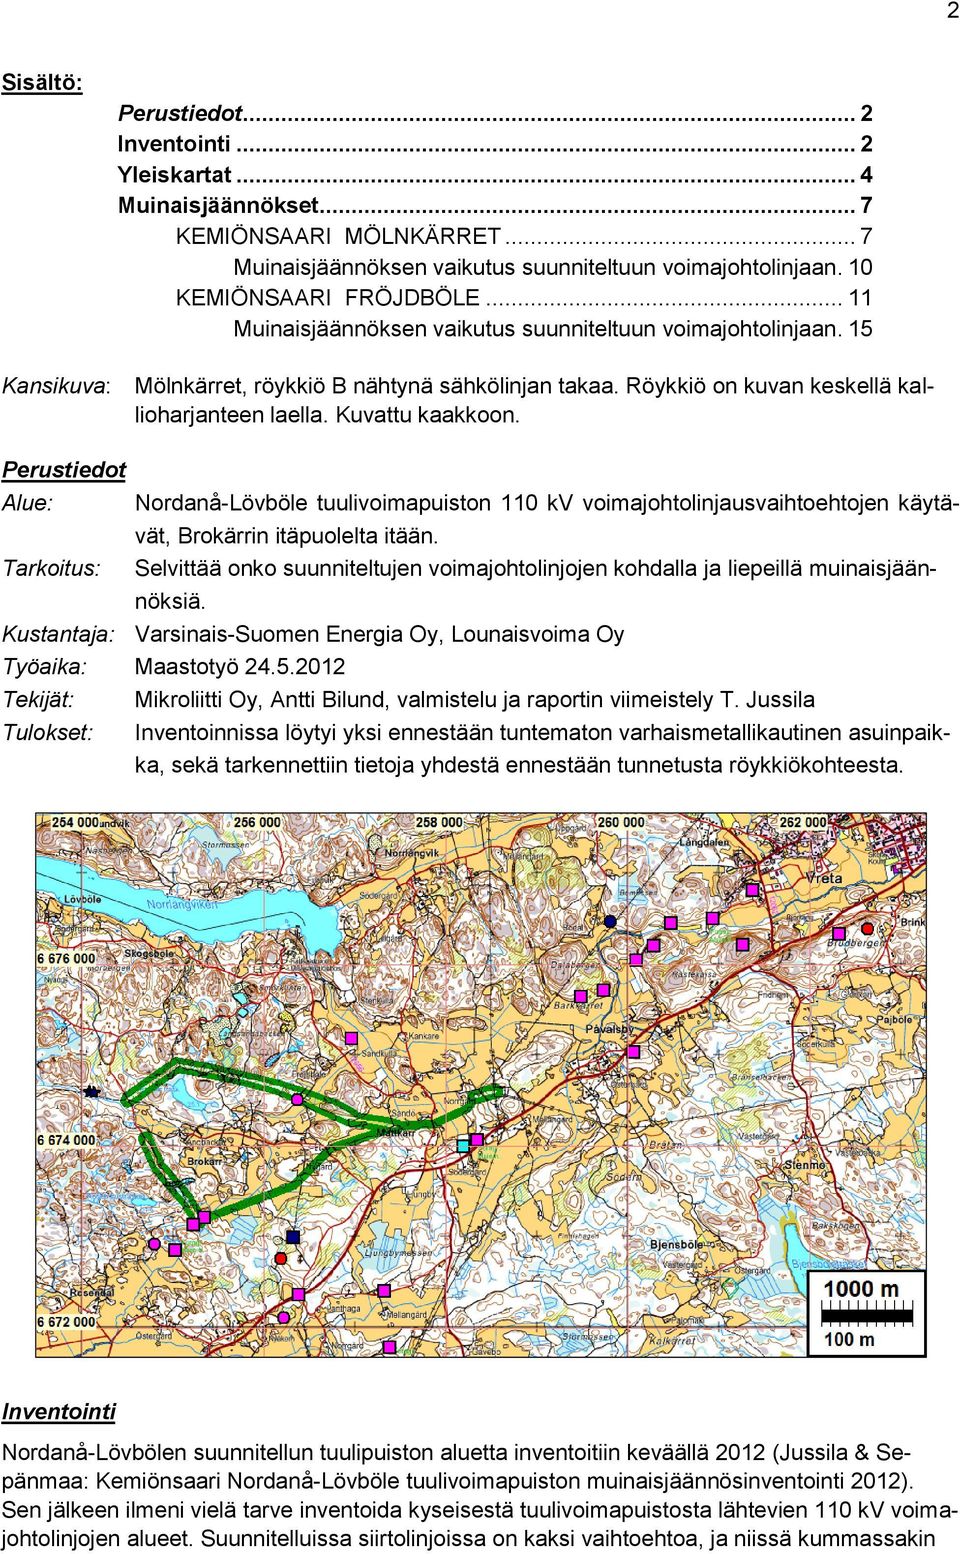 Kuvattu kaakkoon. Perustiedot Alue: Nordanå-Lövböle tuulivoimapuiston 110 kv voimajohtolinjausvaihtoehtojen käytävät, Brokärrin itäpuolelta itään.